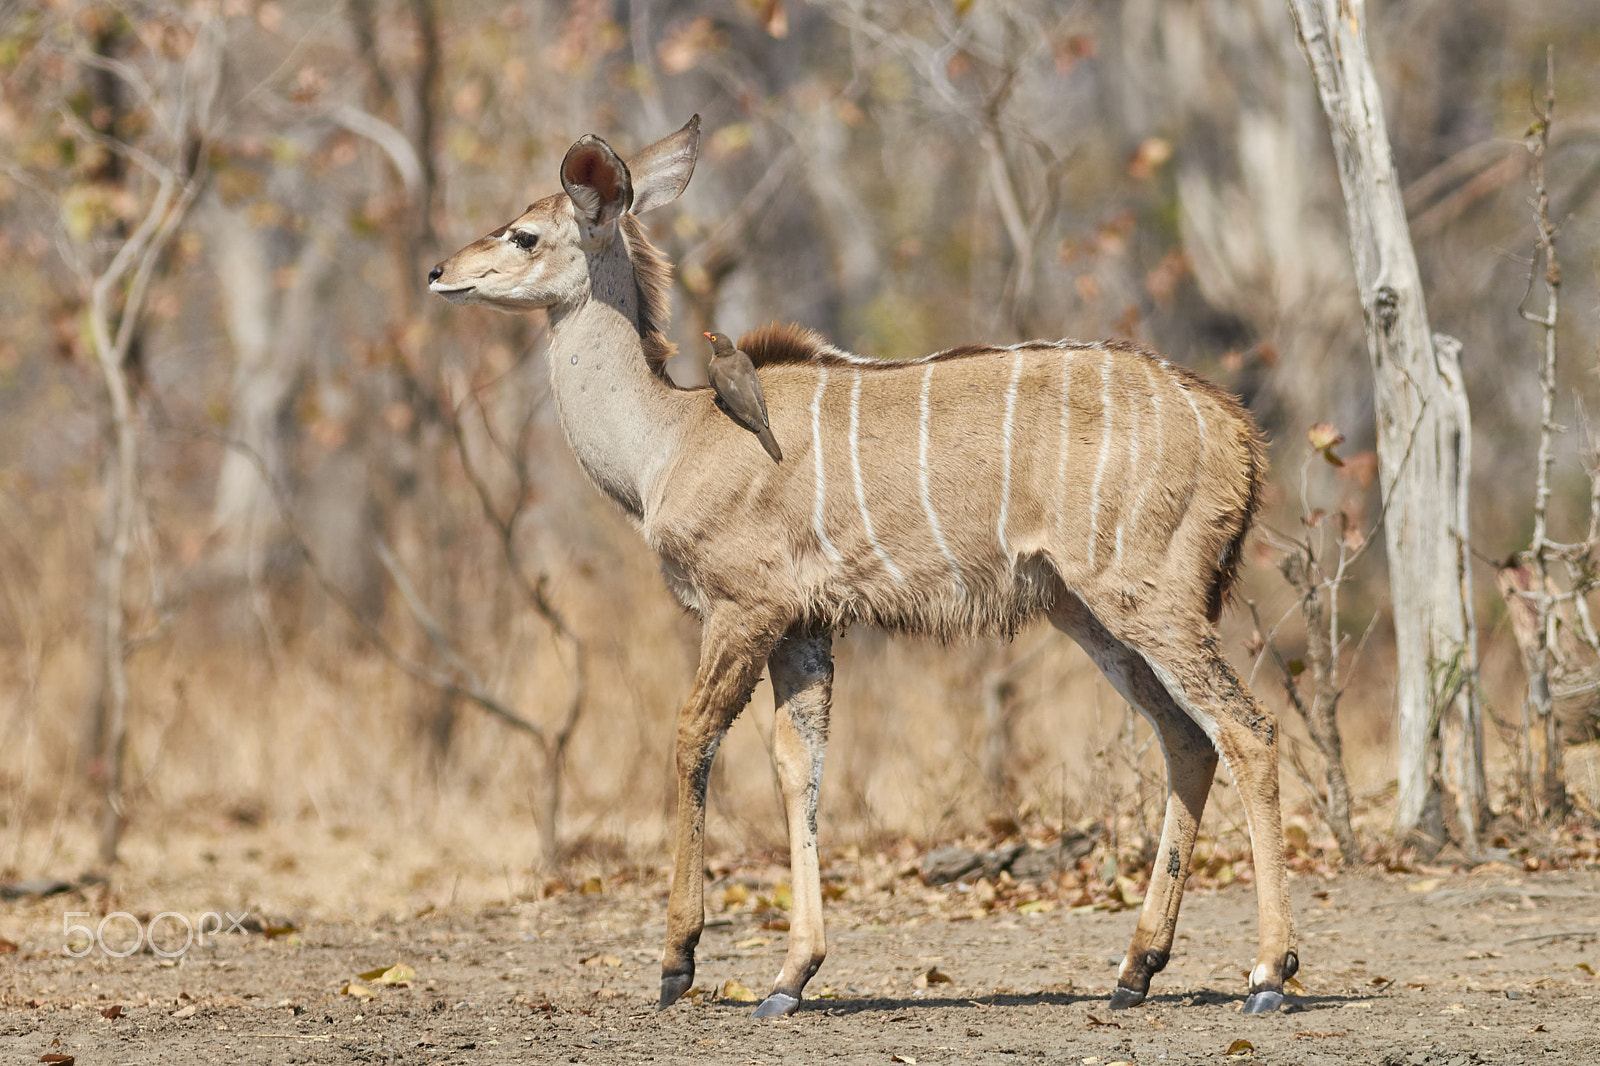 Canon EOS 70D sample photo. Greater kudu (tragelaphus strepsiceros) photography